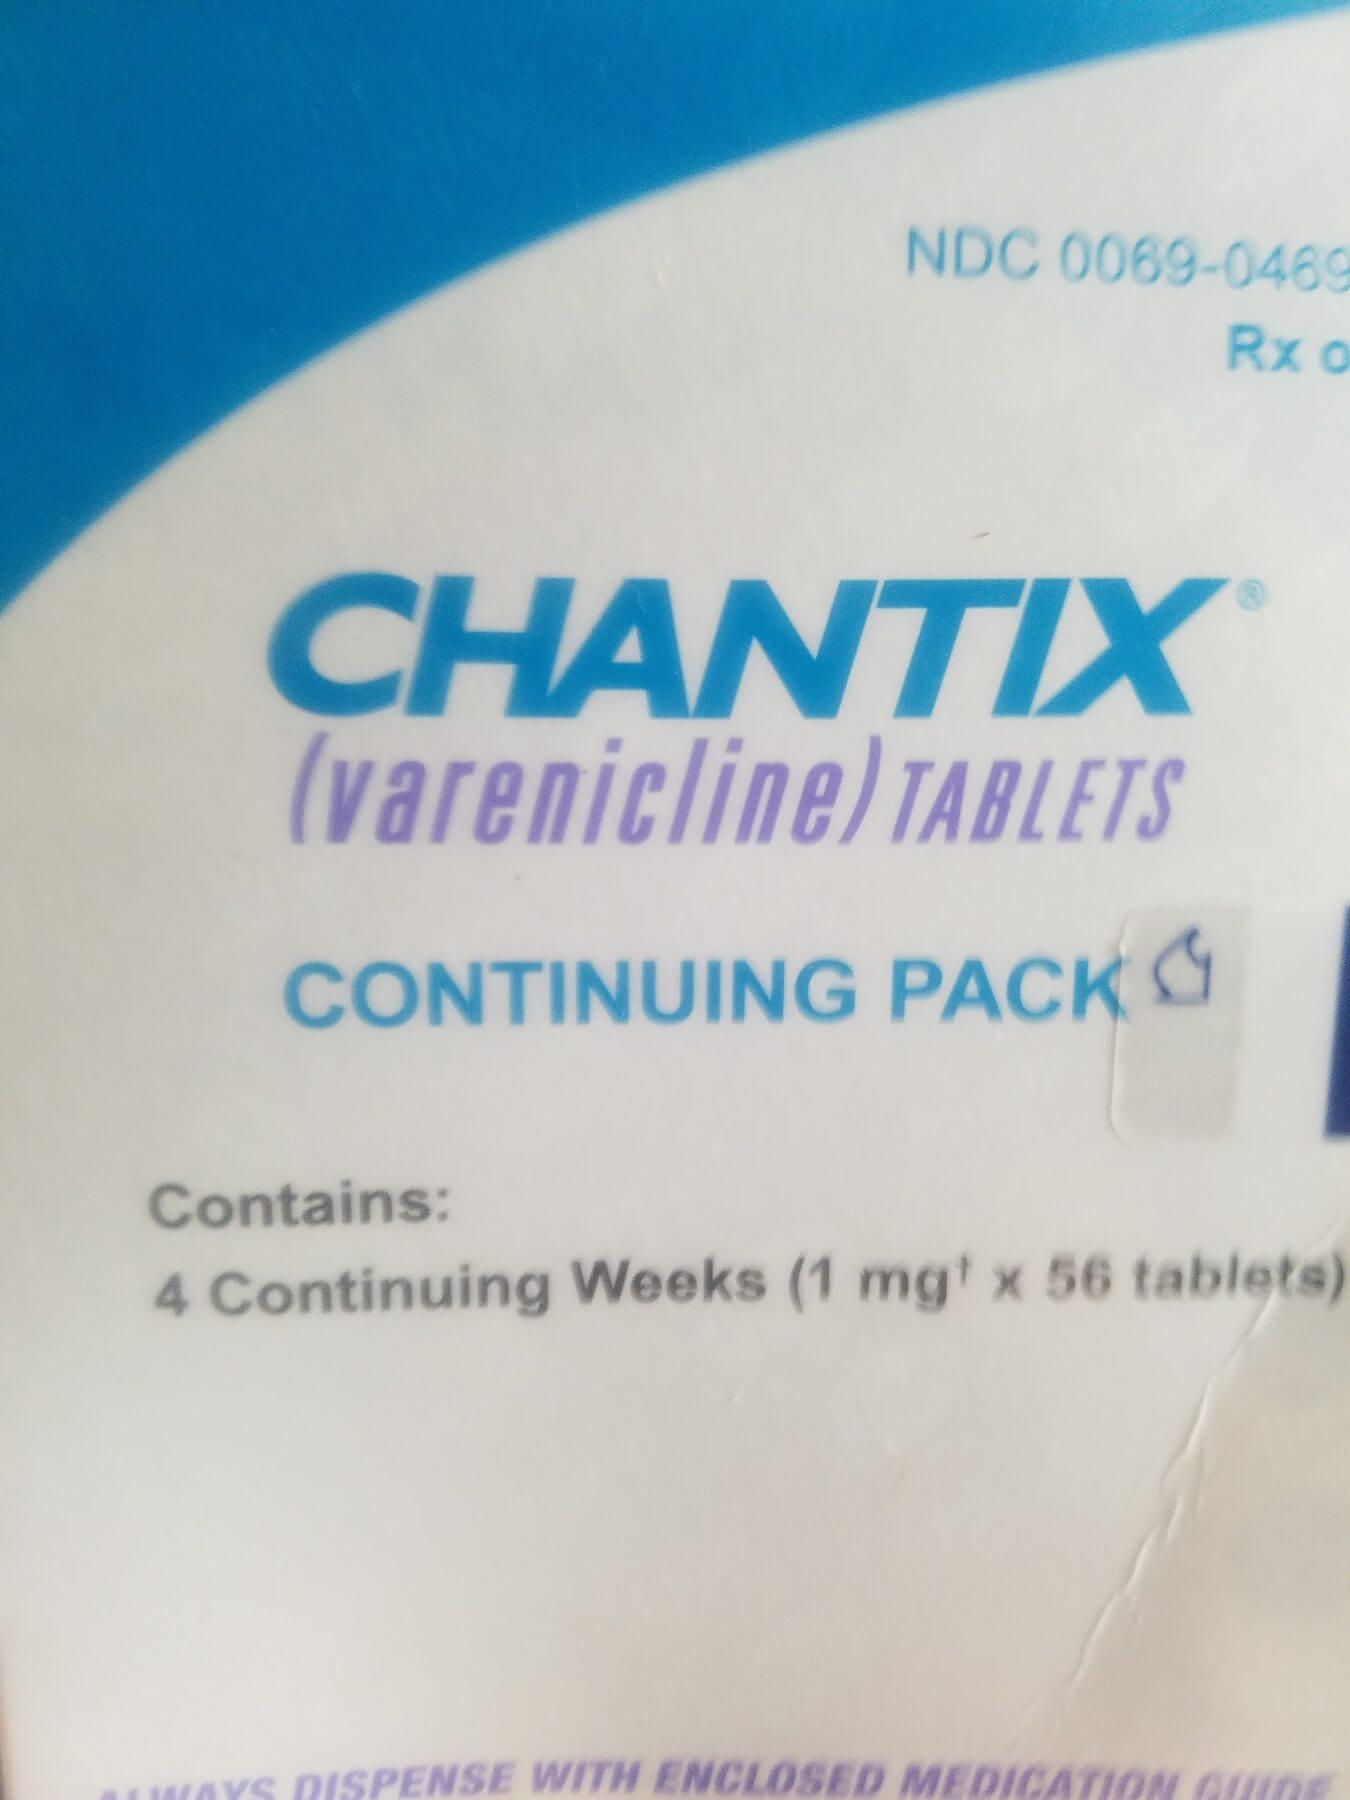 Chantix Logo - Quit Smoking Guaranteed in TWO WEEKS with Chantix | AOWANDERS